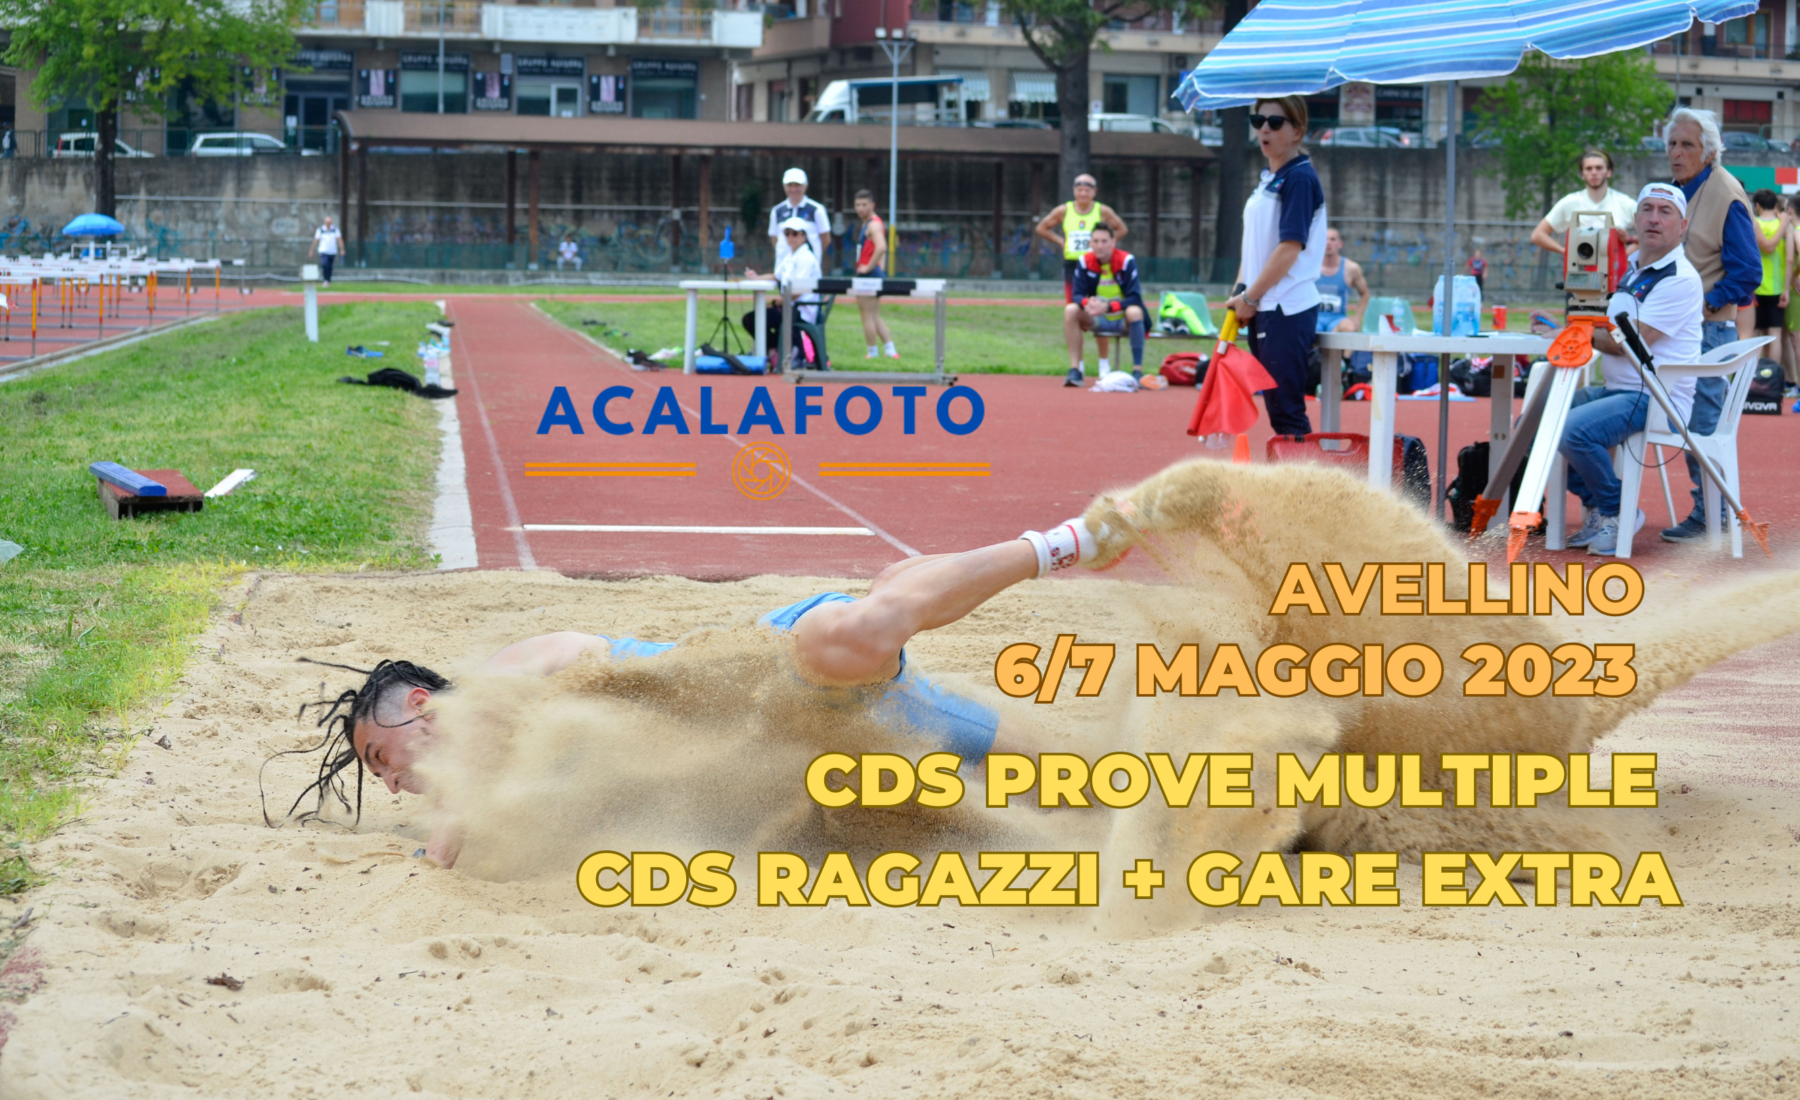 Foto CDS Prove Multiple -CDS Ragazzi e gare di contorno Avellino maggio 2023